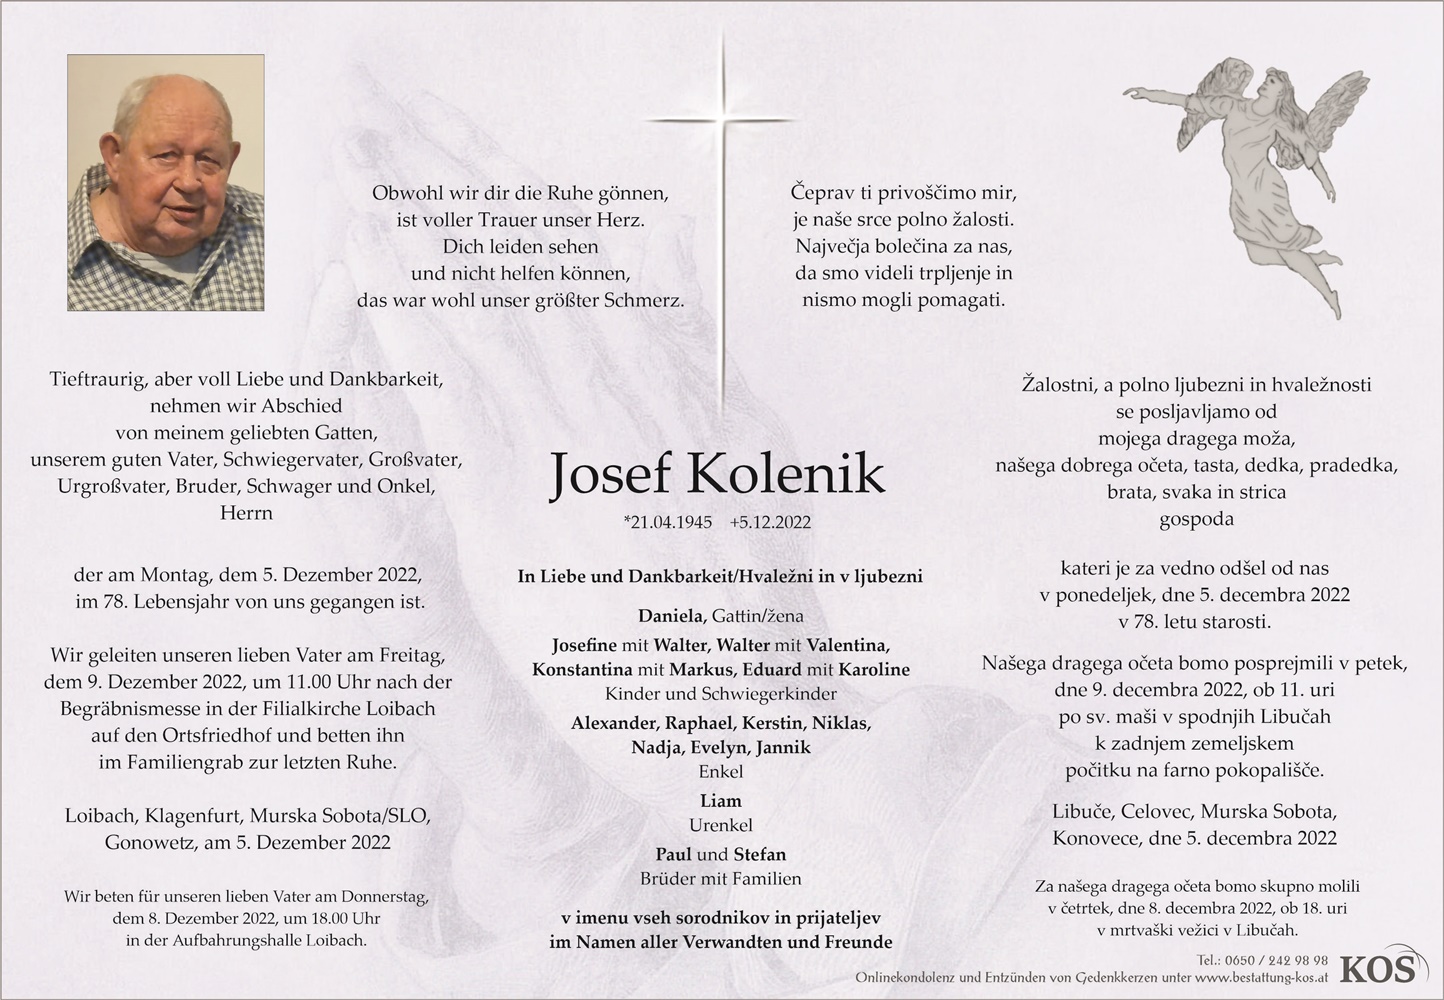 Josef Kolenik